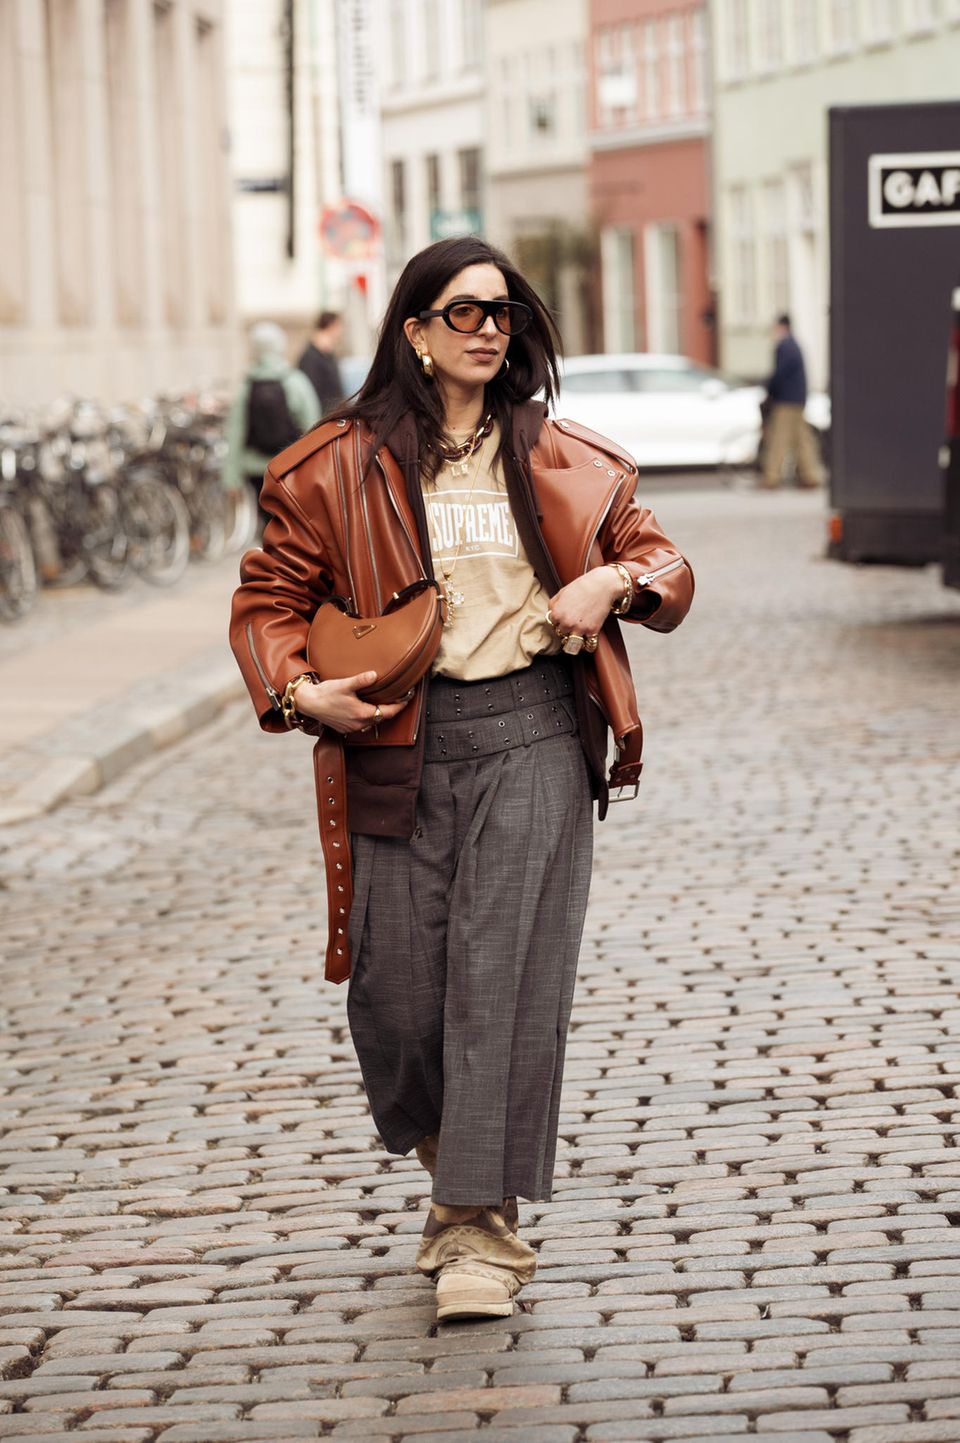 Wie man stylisch Brauntöne kombiniert, zeigt Selma Kaci mit diesem Look in Kopenhagen. Sie trägt eine kamelfarbene Lederjacke, ein beigefarbenes T-Shirt von Supreme und kombiniert darunter eine dunkelbraune Kapuzenjacke. Ihre Sonnenbrille hat ebenfalls braun getönte Gläser und abgerundet wird der Look mit einer farblich abgestimmten Tasche.